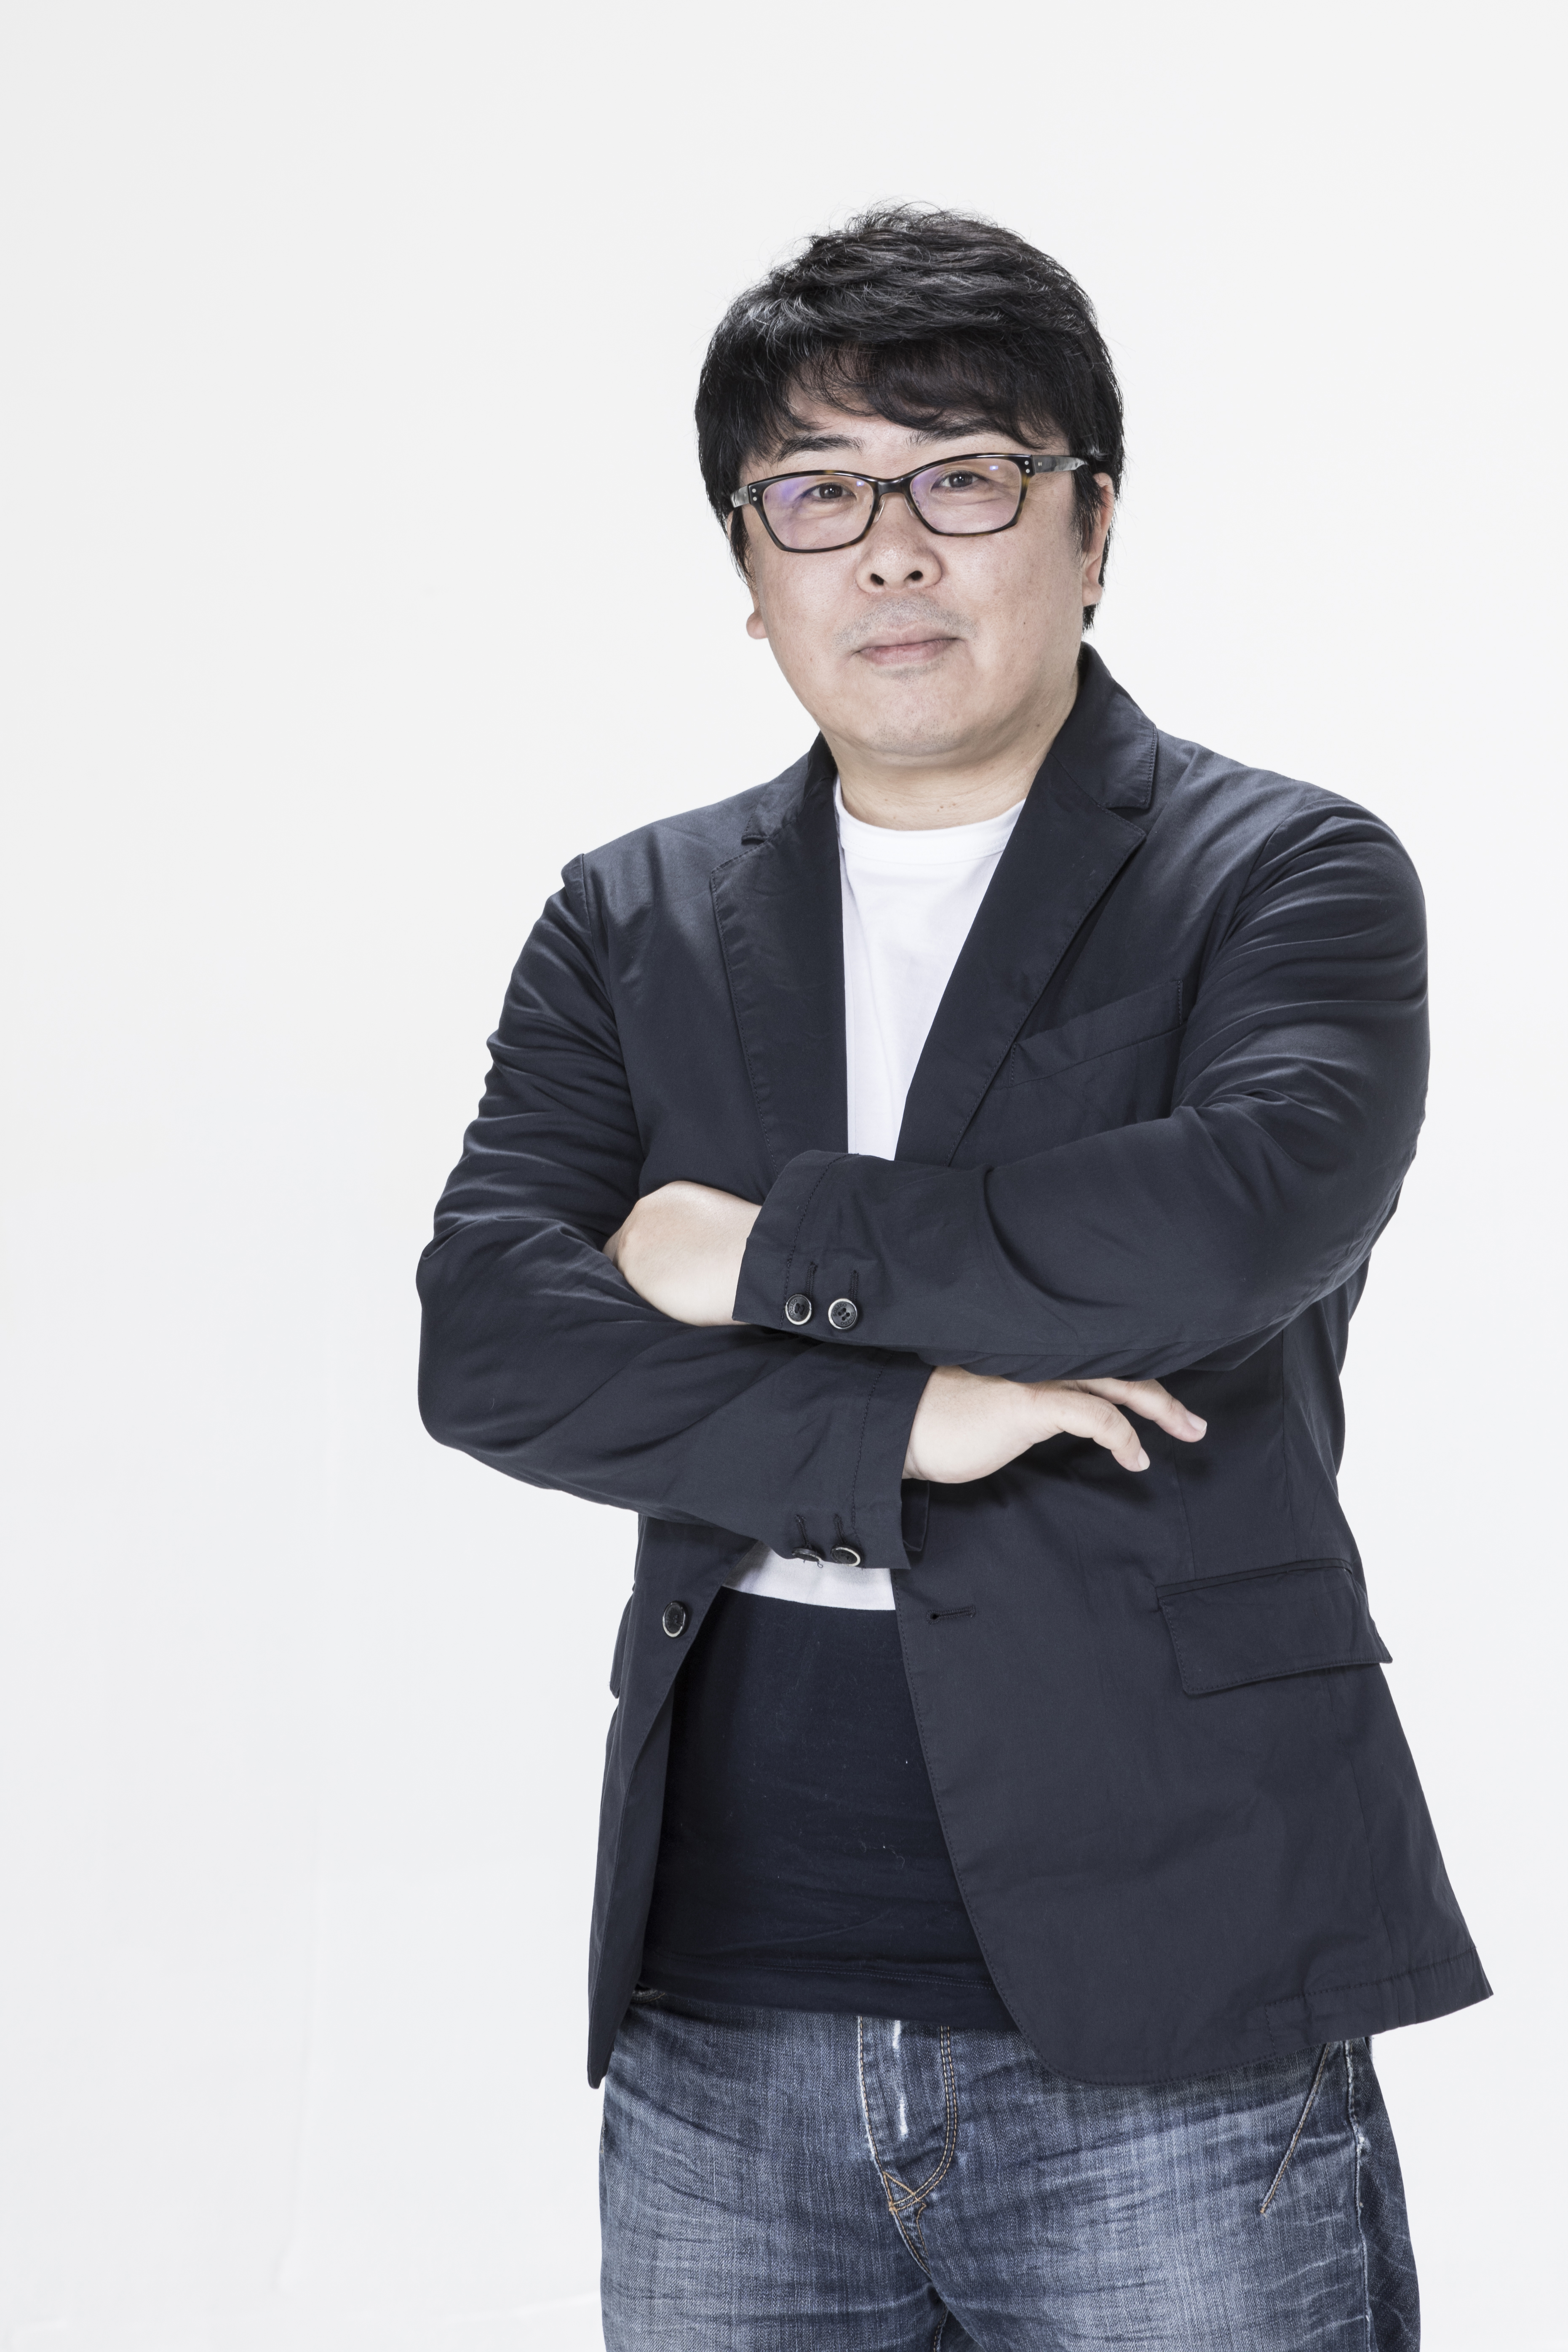 代表取締役CEO　鶴尾 康氏
大学卒業後3年以内には起業すると決意し、1992年にはそれを実現。現在の礎を築いた。